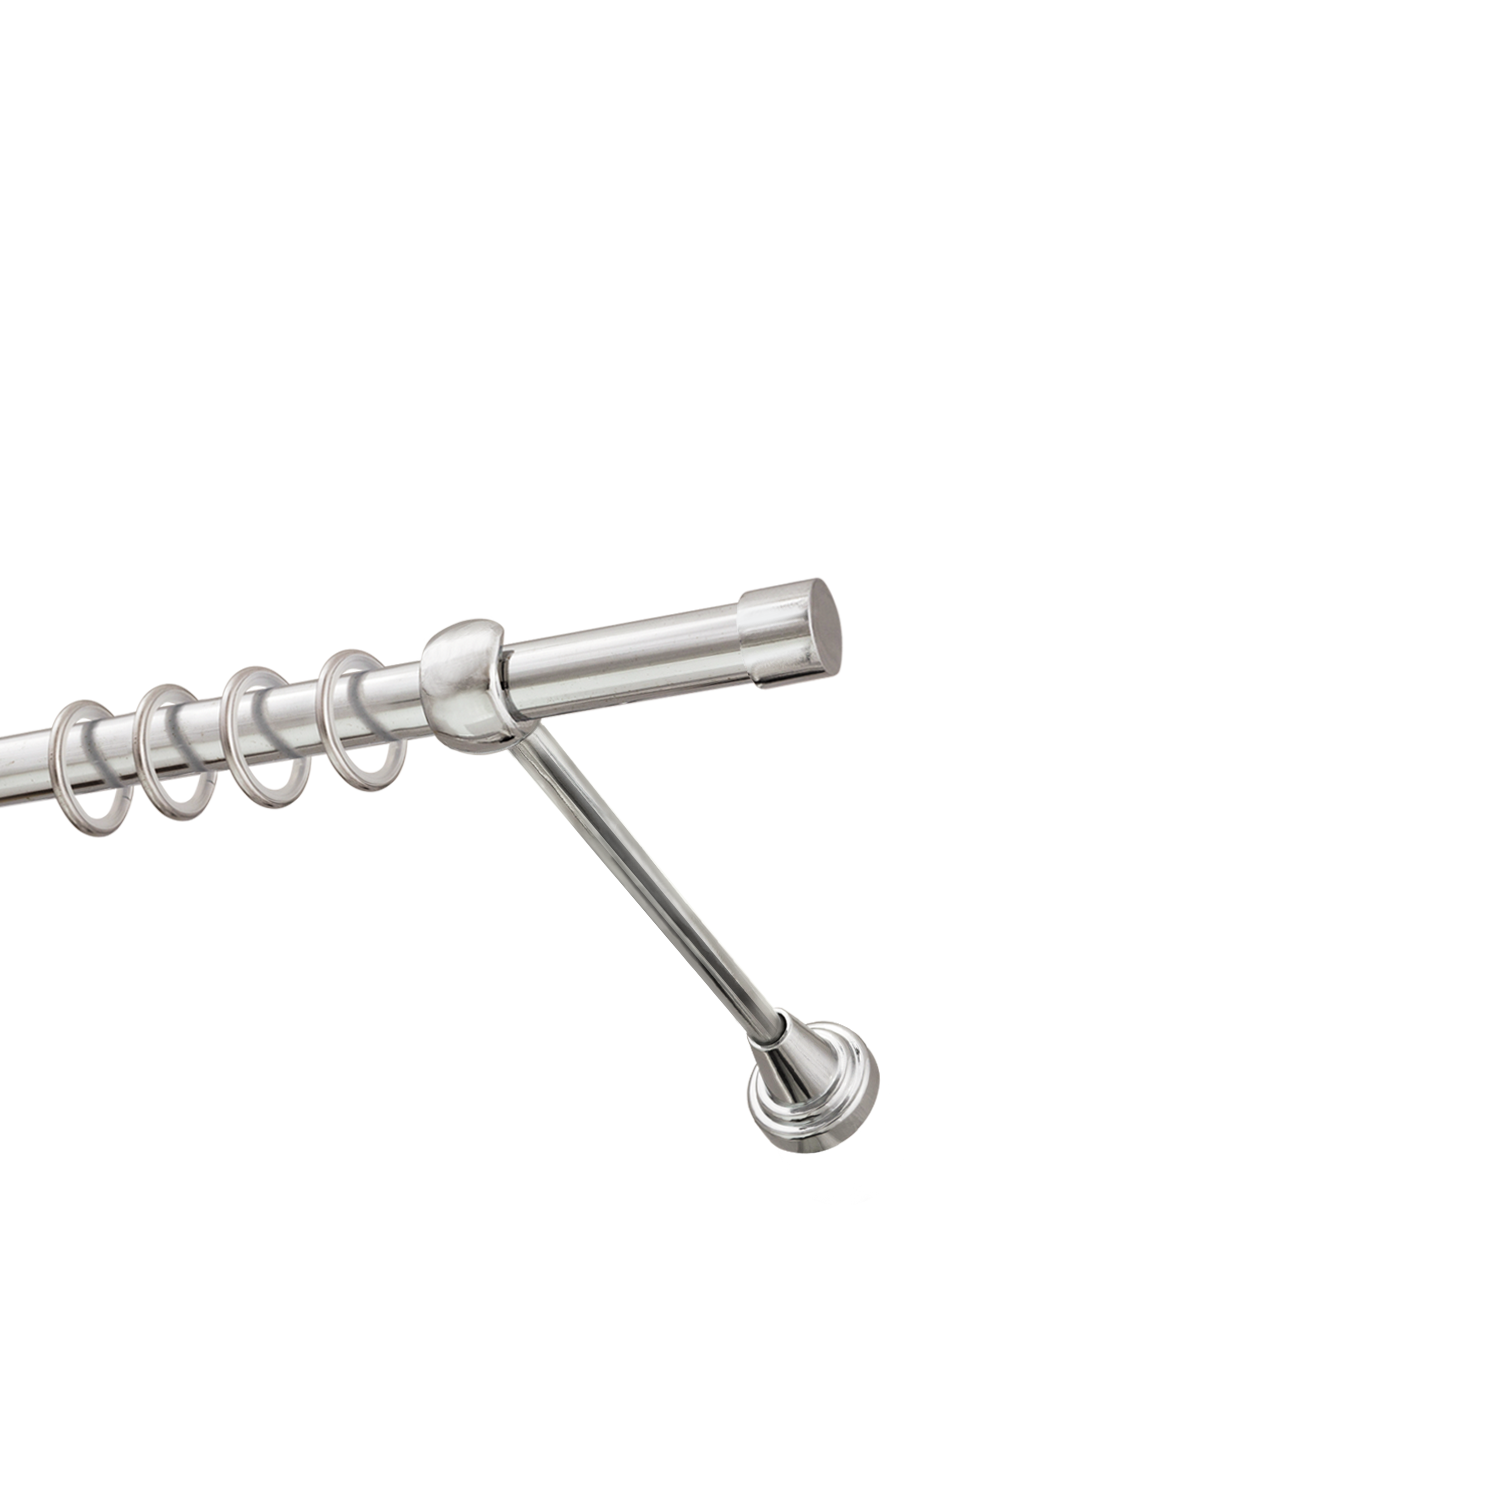 Металлический карниз для штор Заглушка, однорядный 16 мм, серебро, гладкая штанга, длина 180 см - фото Wikidecor.ru